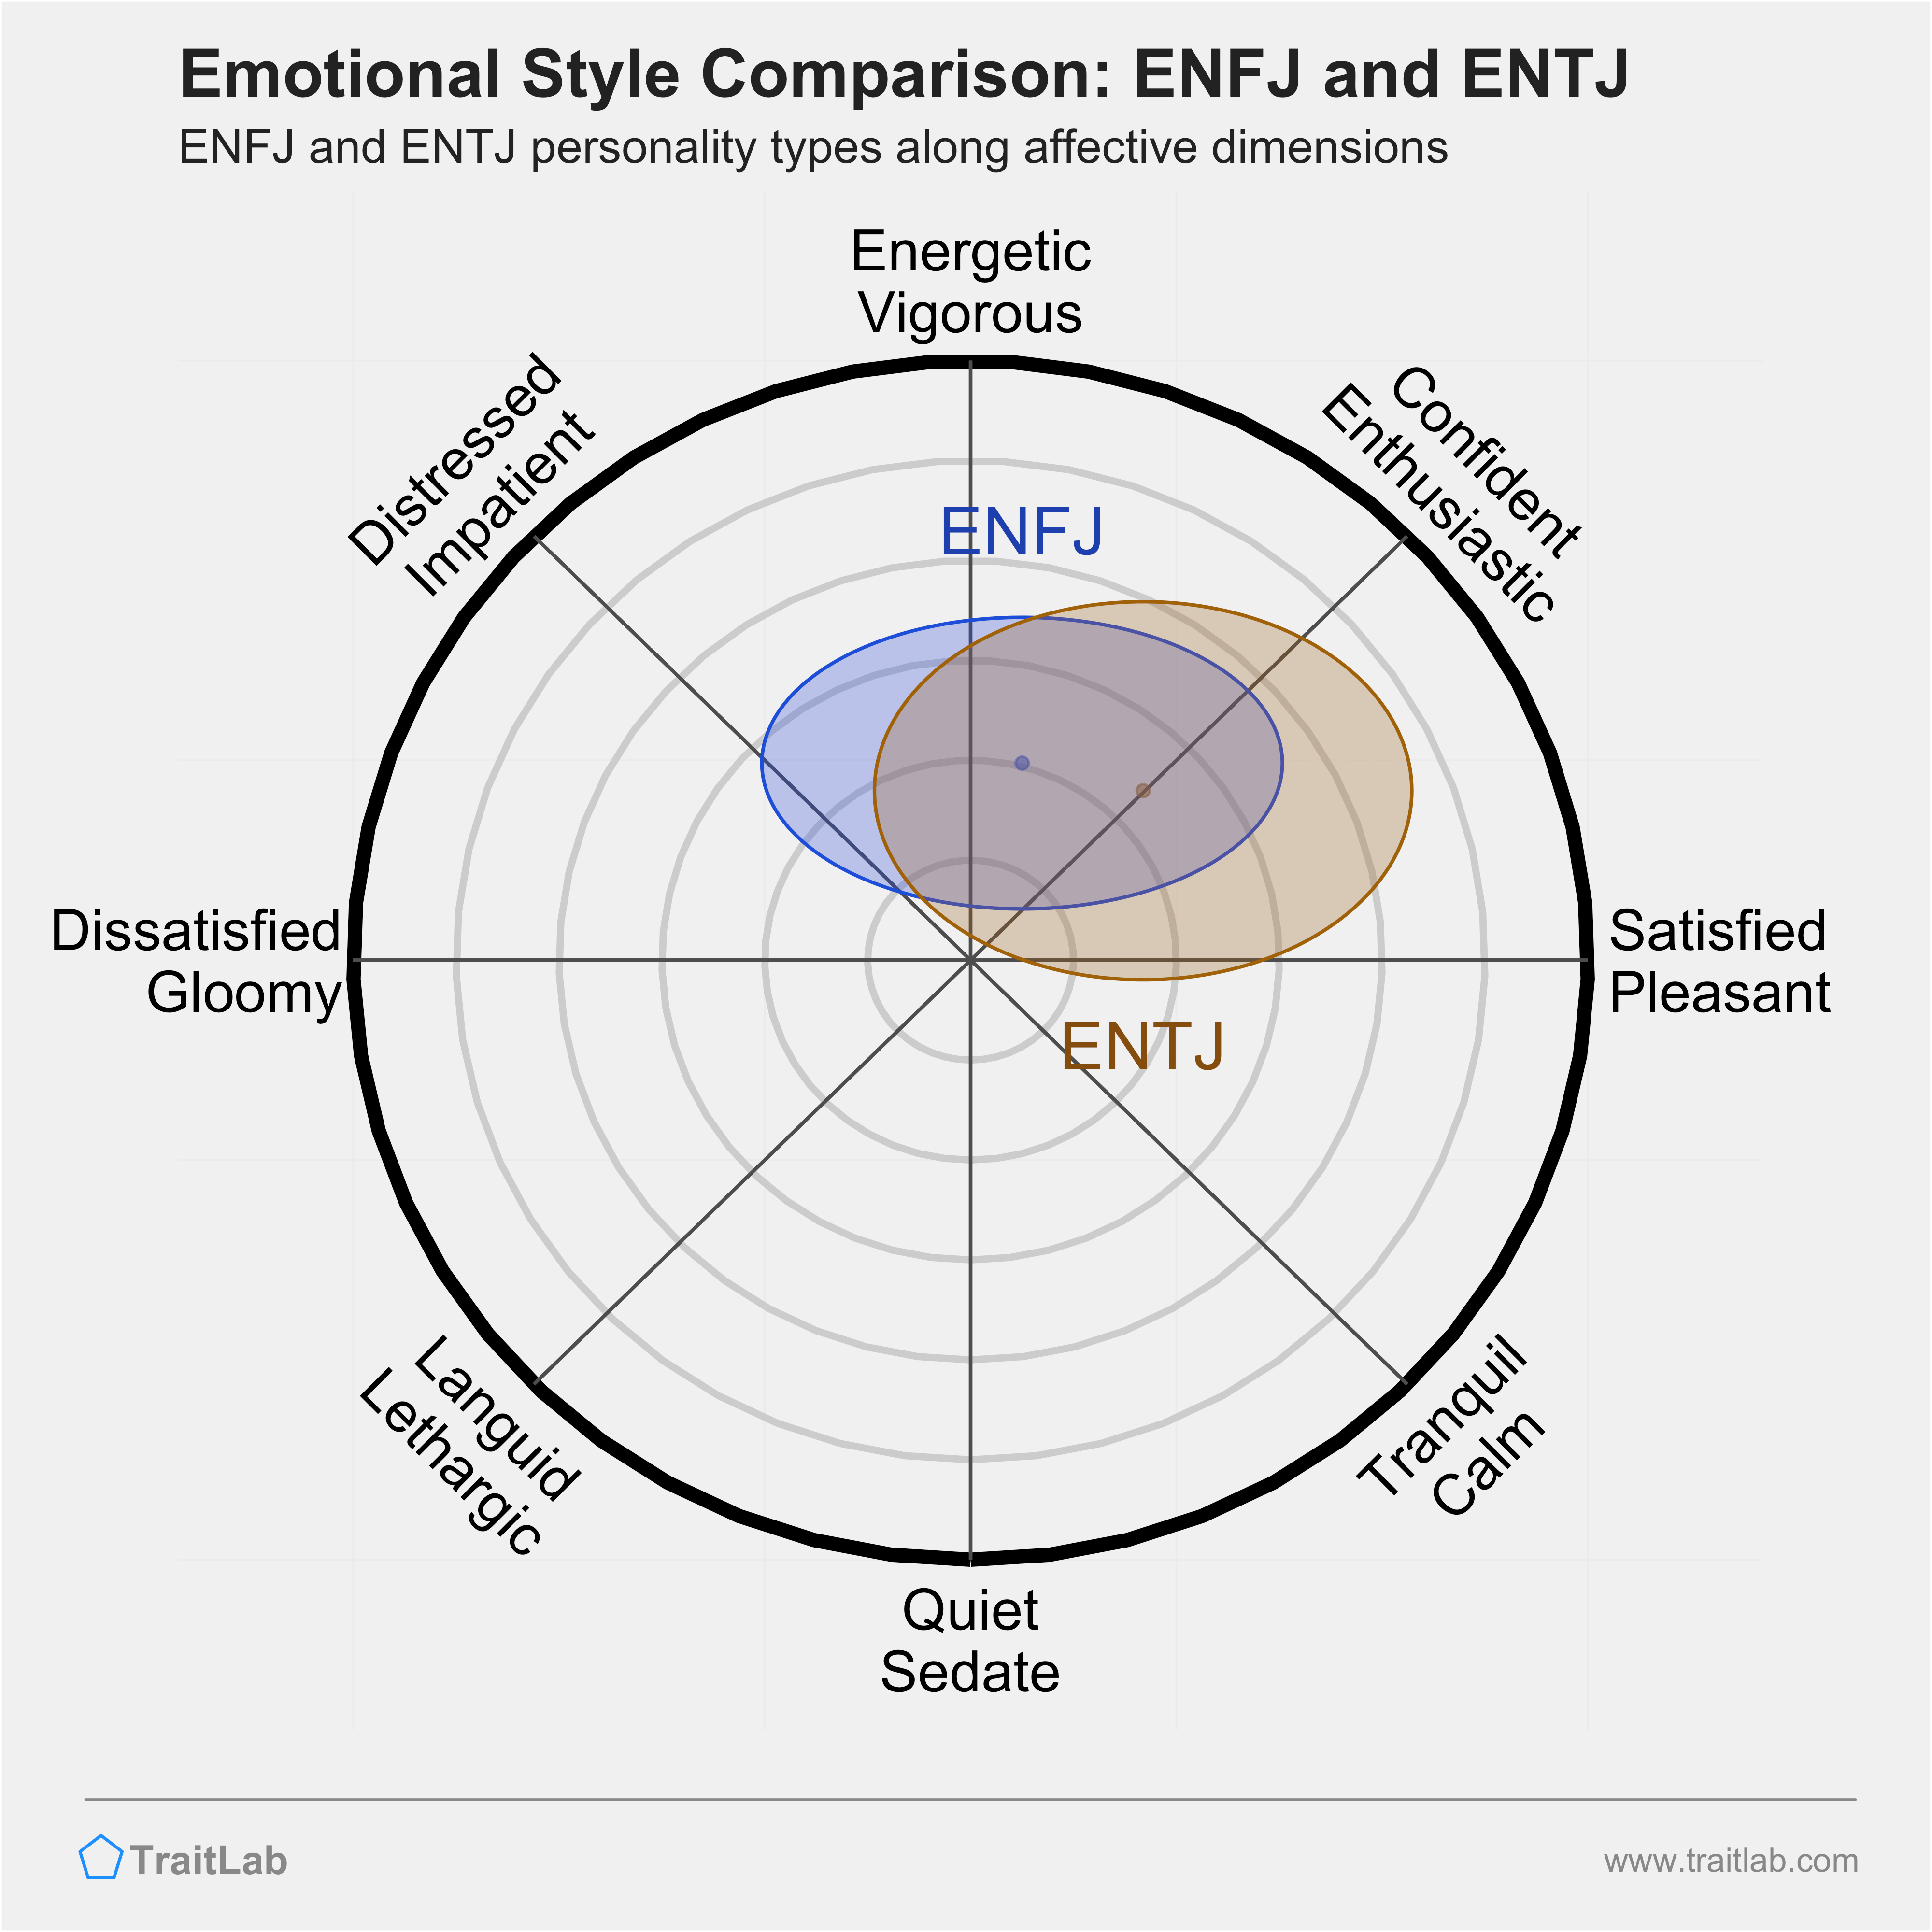 ENFJ and ENTJ comparison across emotional (affective) dimensions